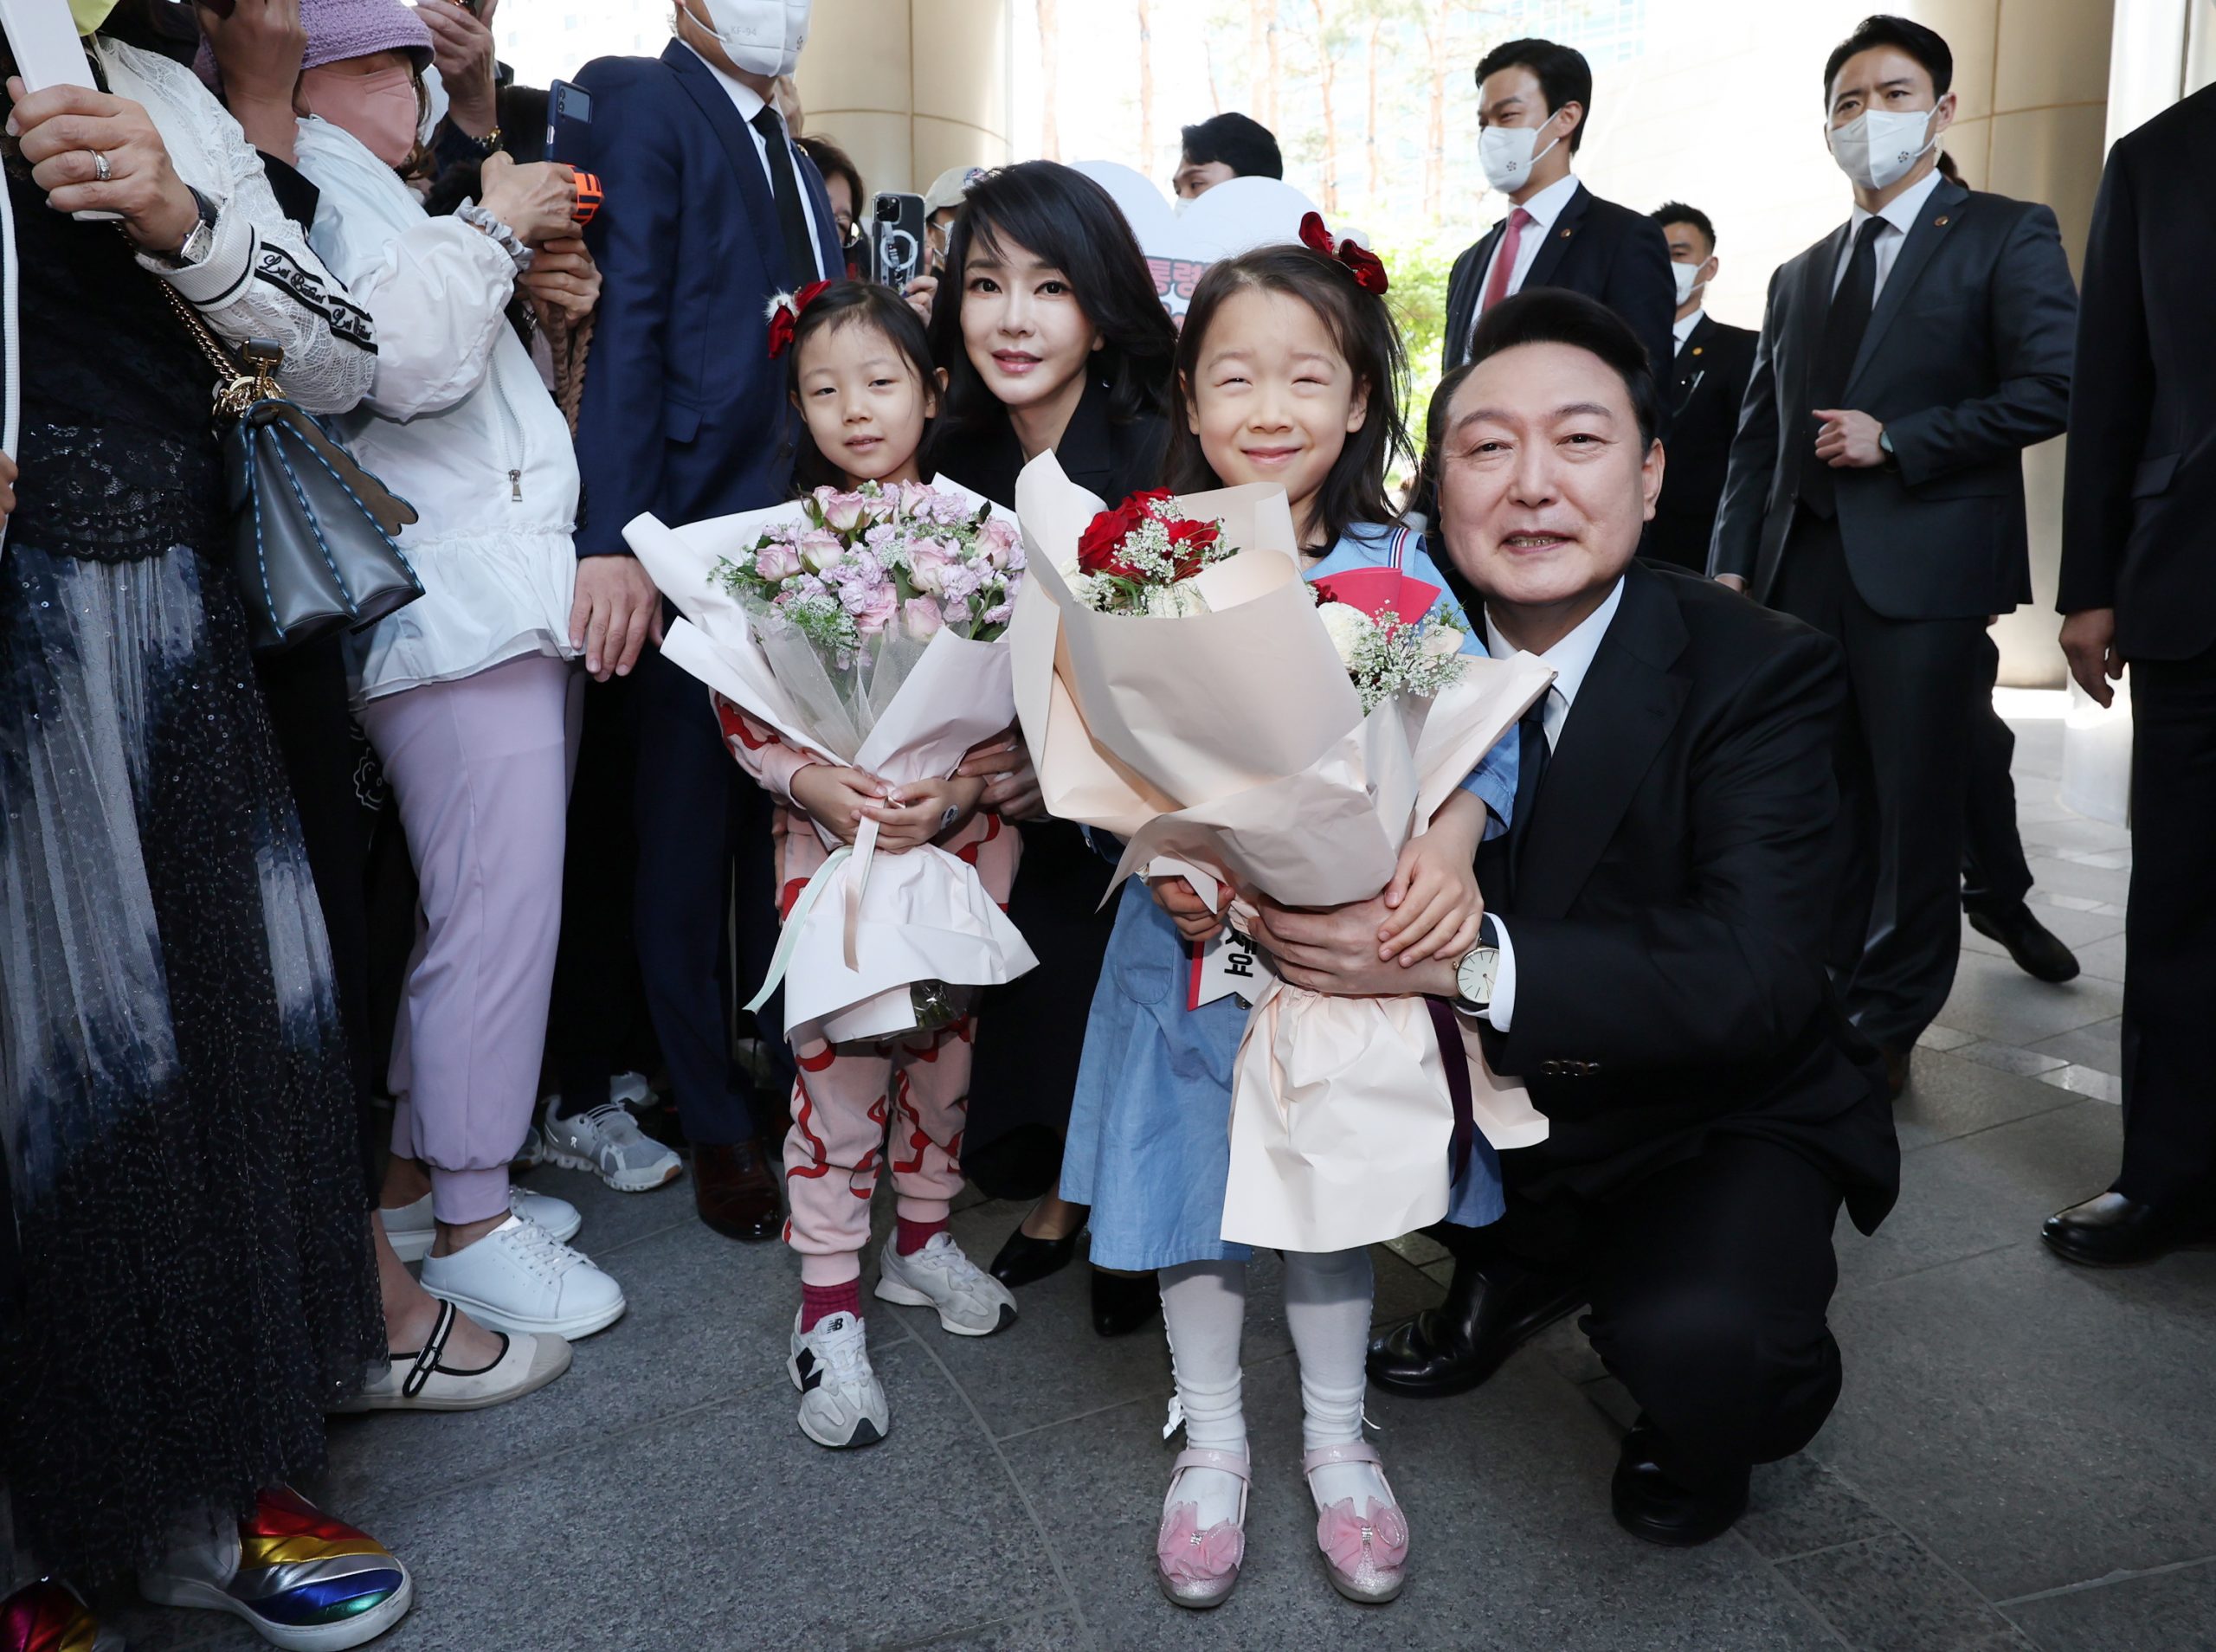 反女权的鹰派“政治素人”尹锡悦就任韩国总统 国内外面对不小挑战